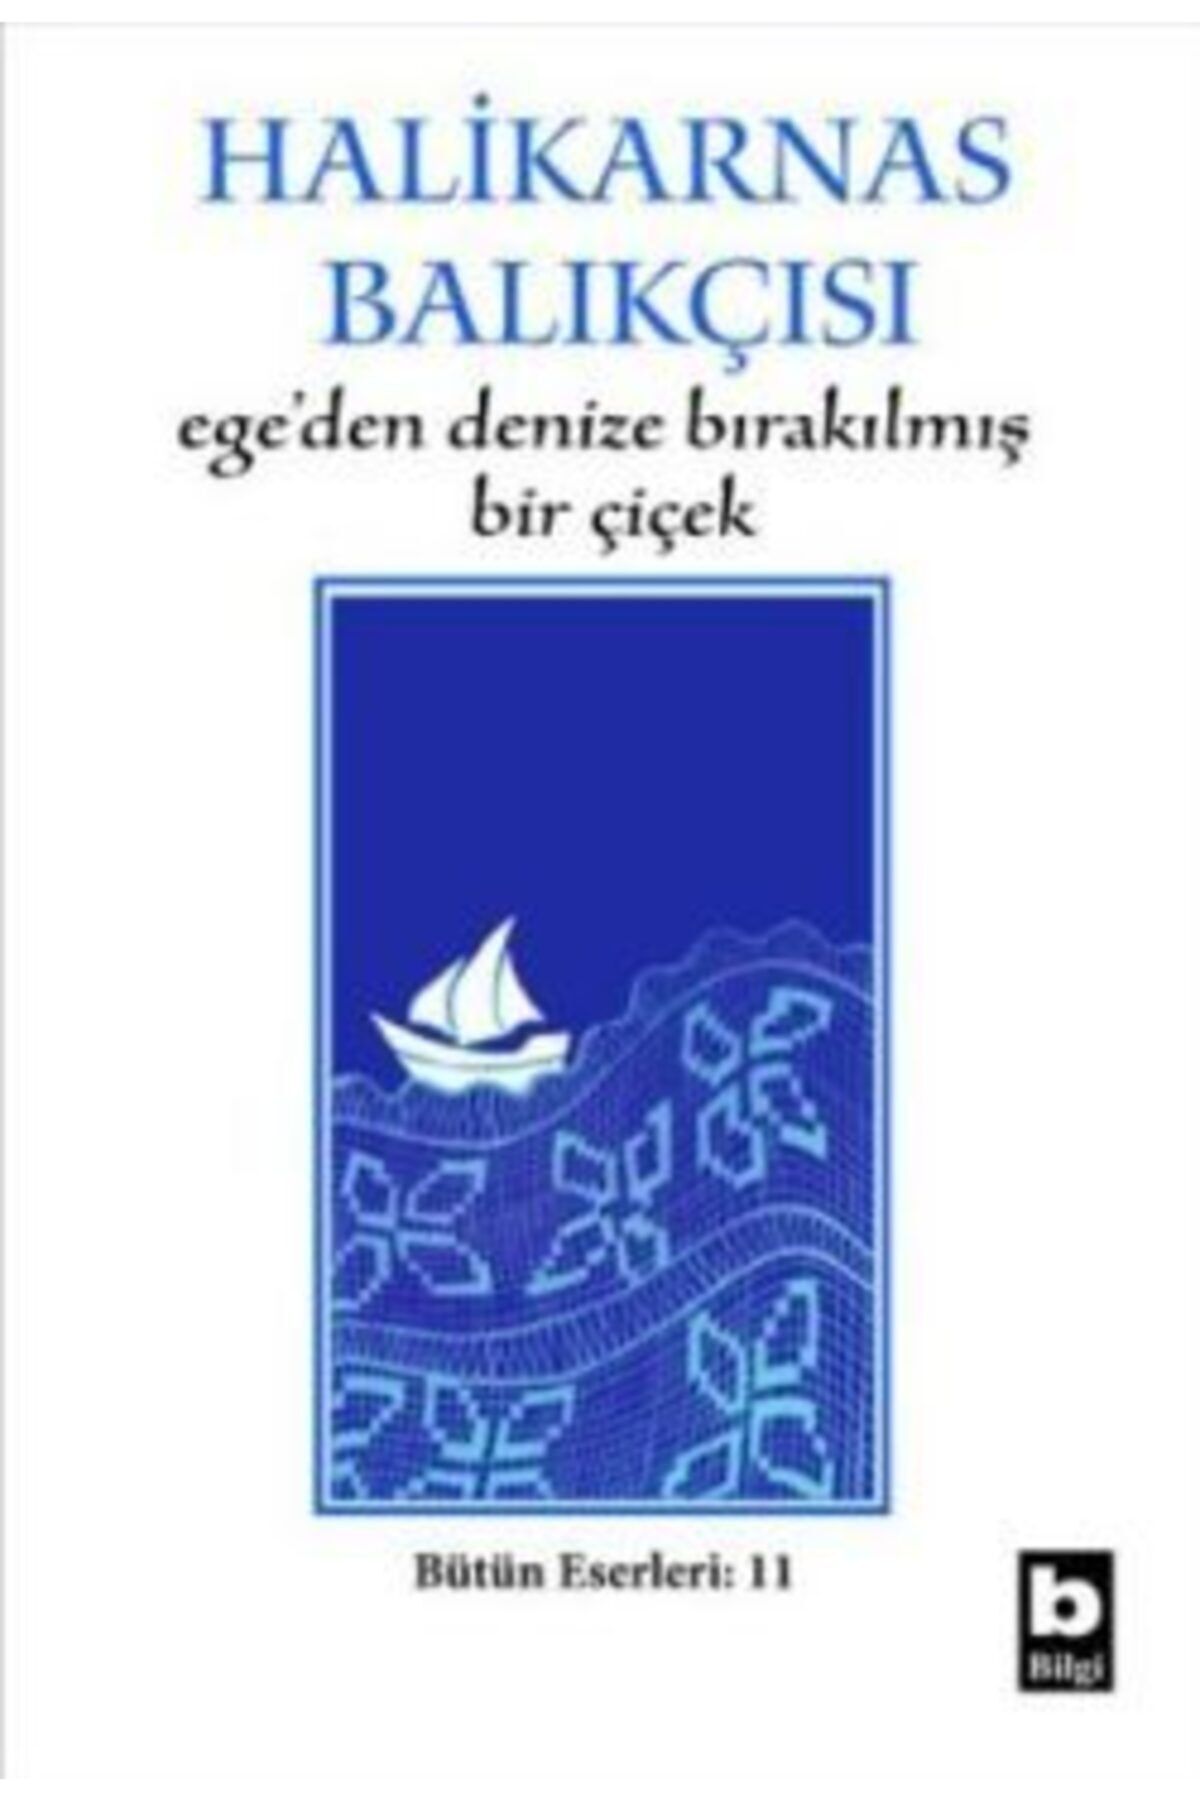 Bilgi Yayınları Ege’den Denize Bırakılmış Bir Çiçek - - Cevat Şakir Kabaağaçlı (halikarnas Balıkçıs